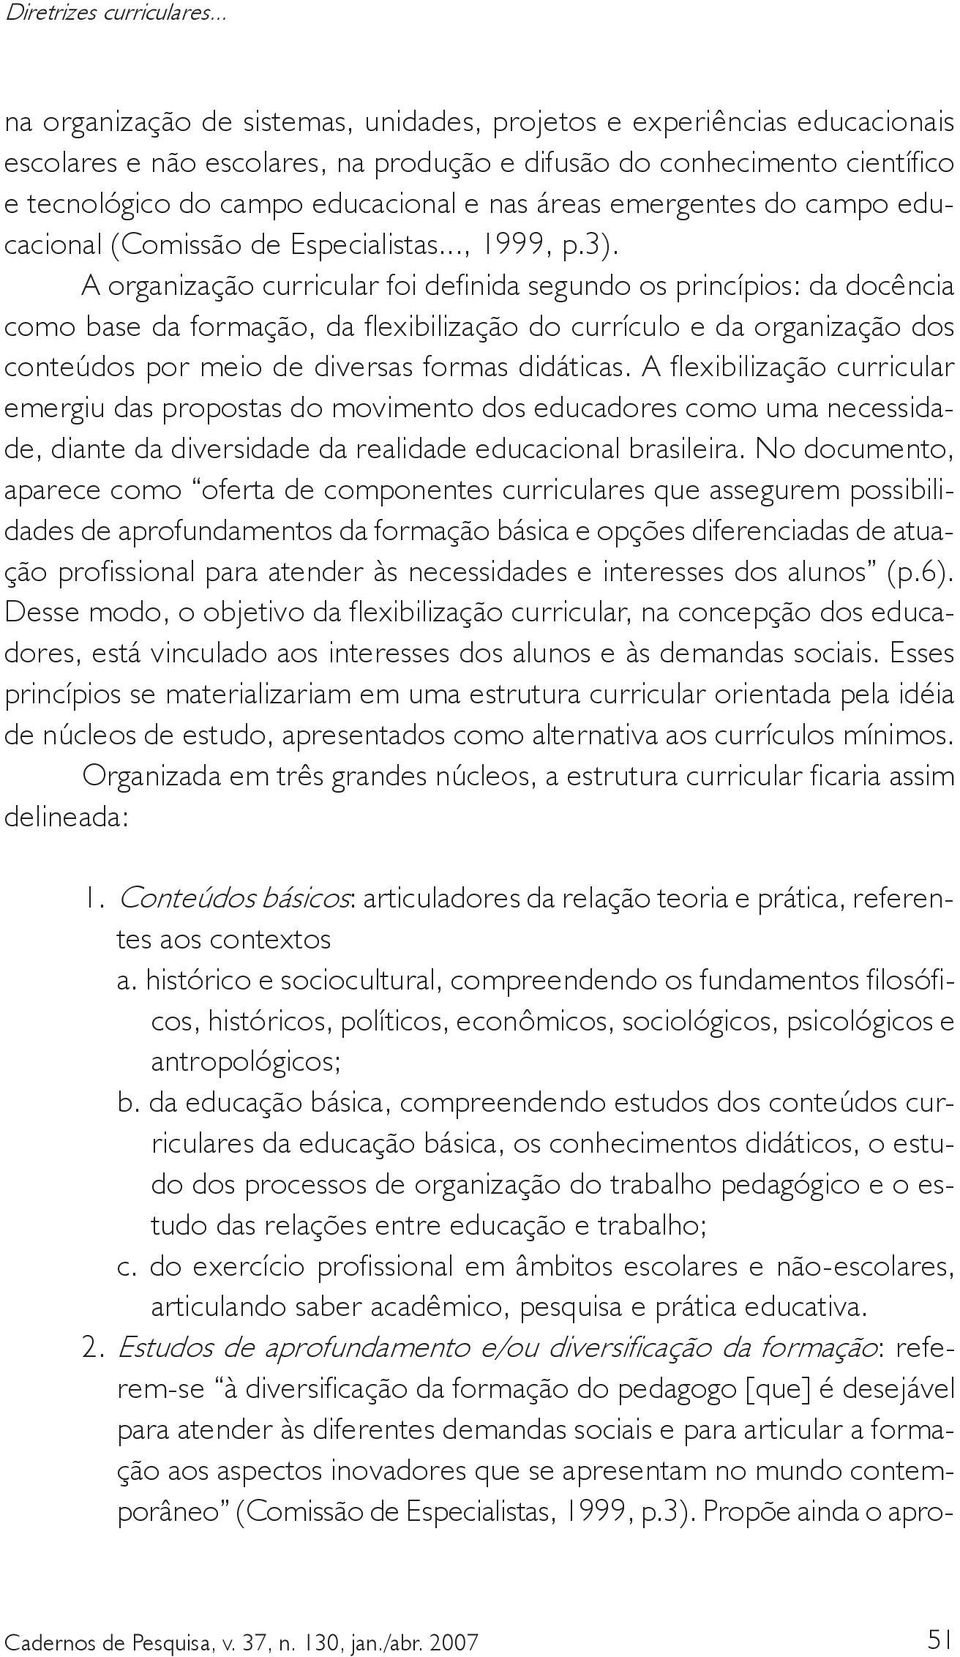 áreas emergentes do campo educacional (Comissão de Especialistas..., 1999, p.3).